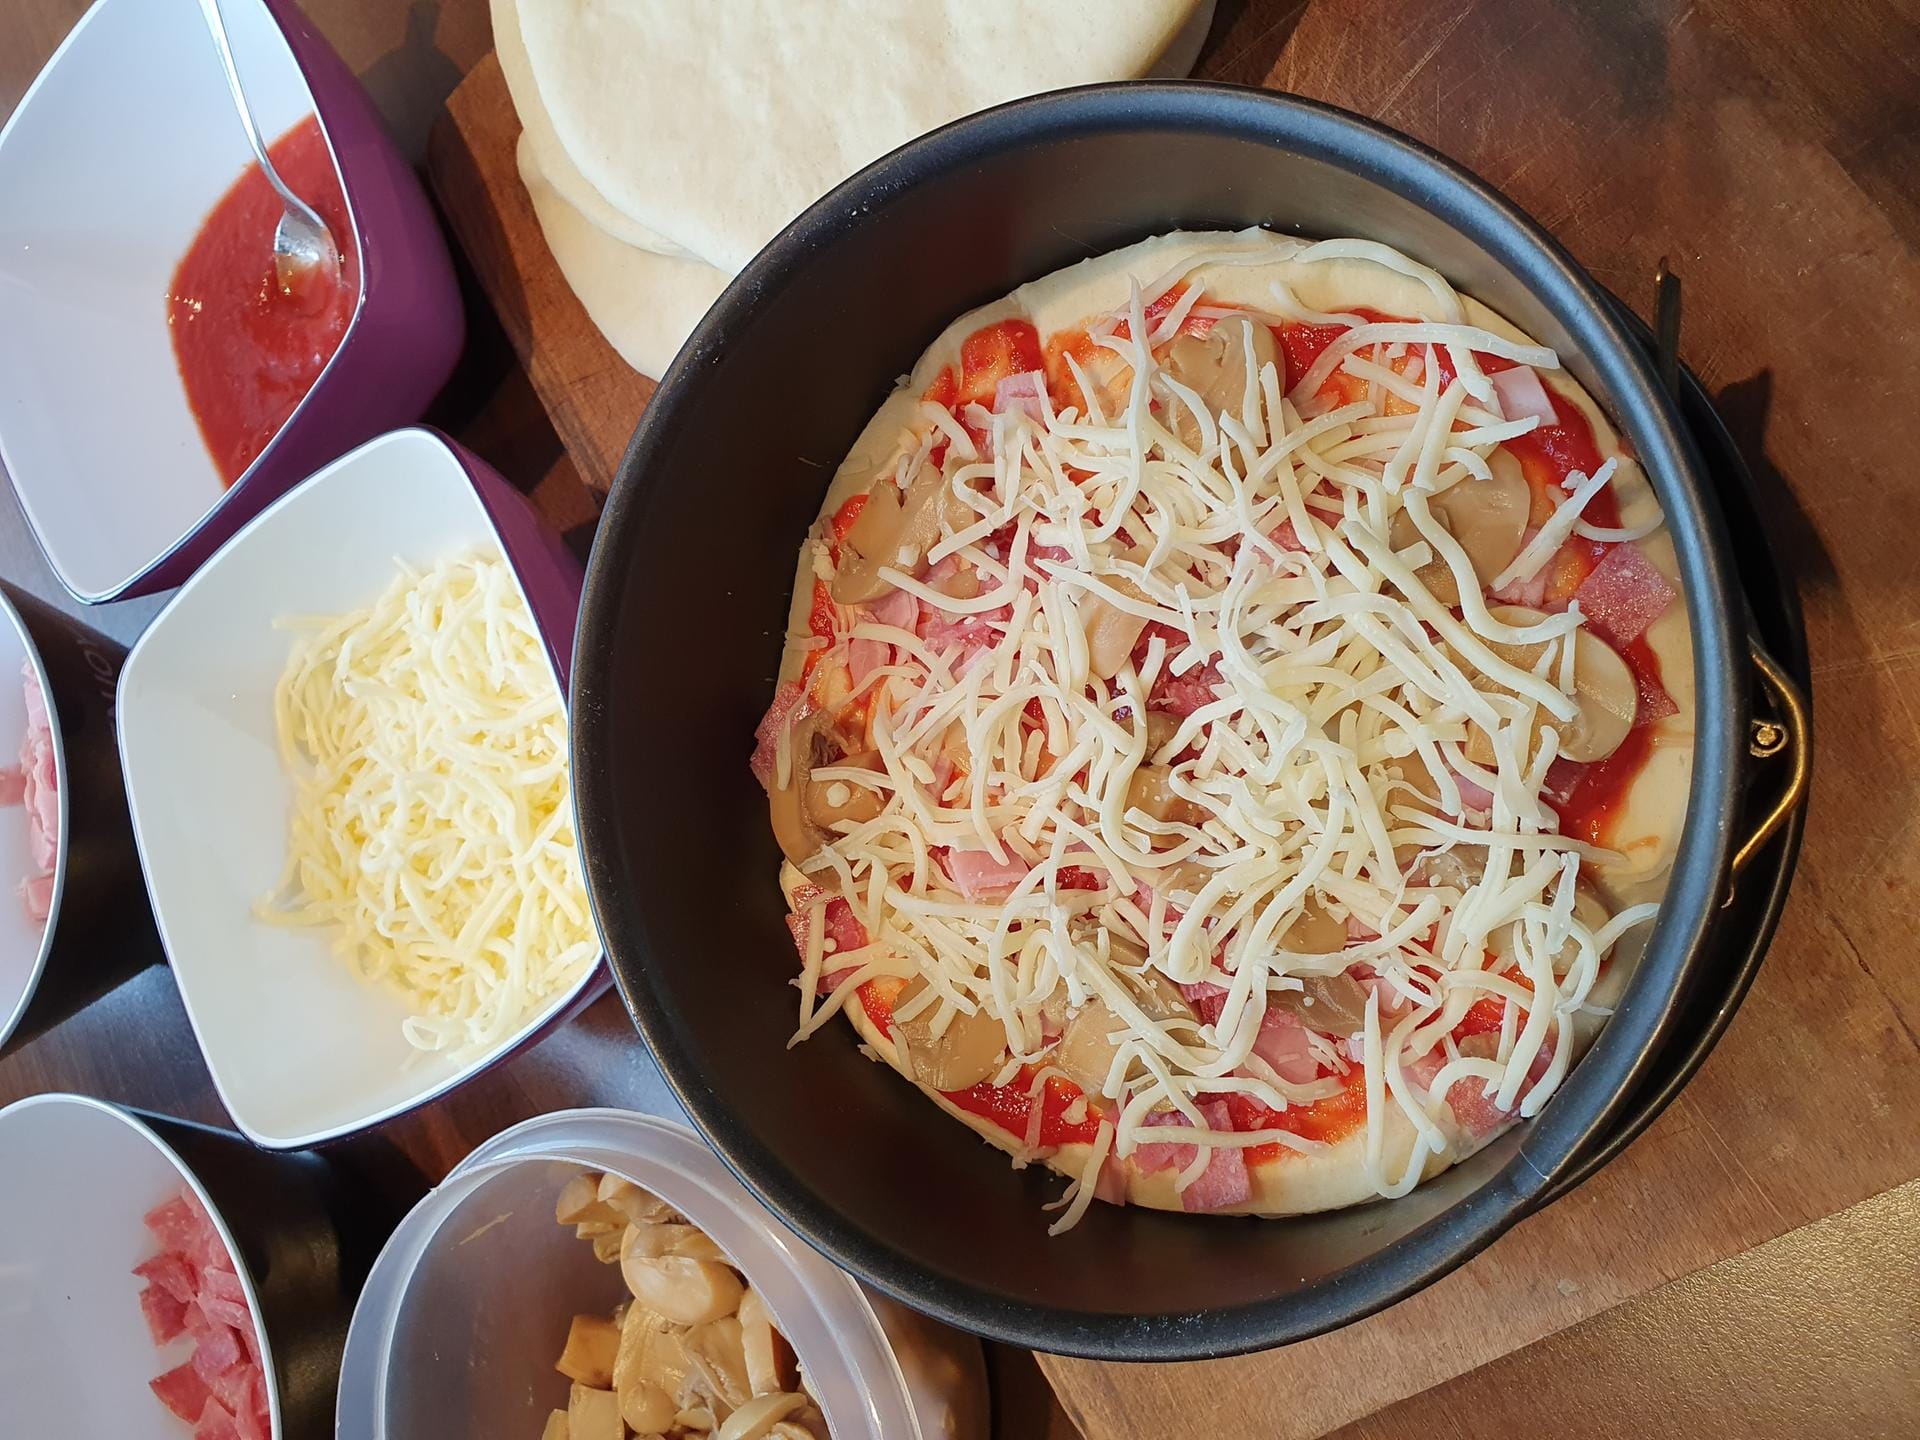 Geben Sie darauf zuerst die Tomatensoße, dann Salami und Schinken sowie die Pilze. Am Ende bestreuen Sie das Ganze mit etwas Käse.